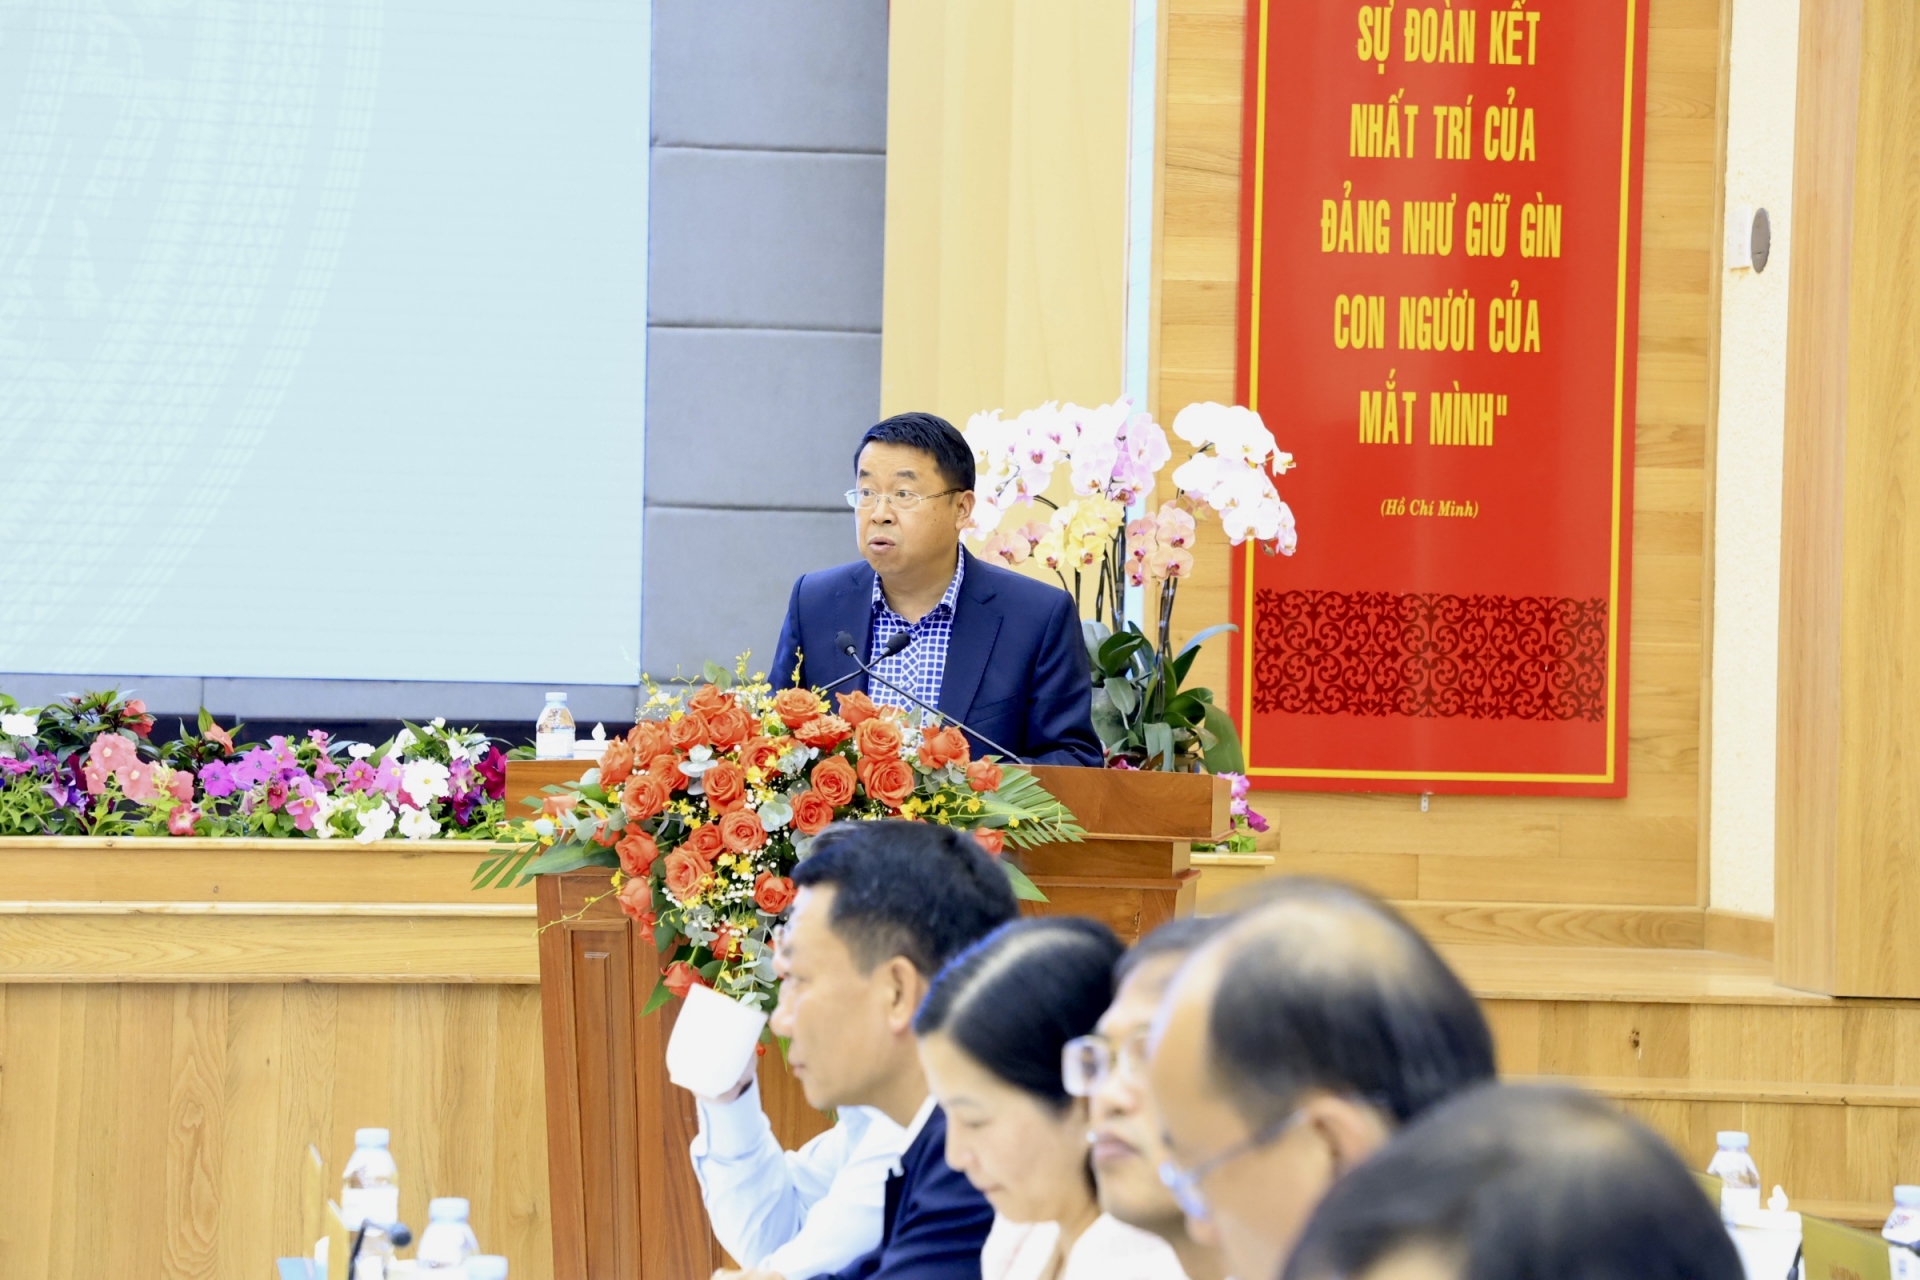 Ông Tôn Thiện San – Giám đốc Sở Kế hoạch và Đầu tư tỉnh Lâm Đồng trình bày báo cáo tình hình KT-XH của tỉnh trong 6 tháng qua